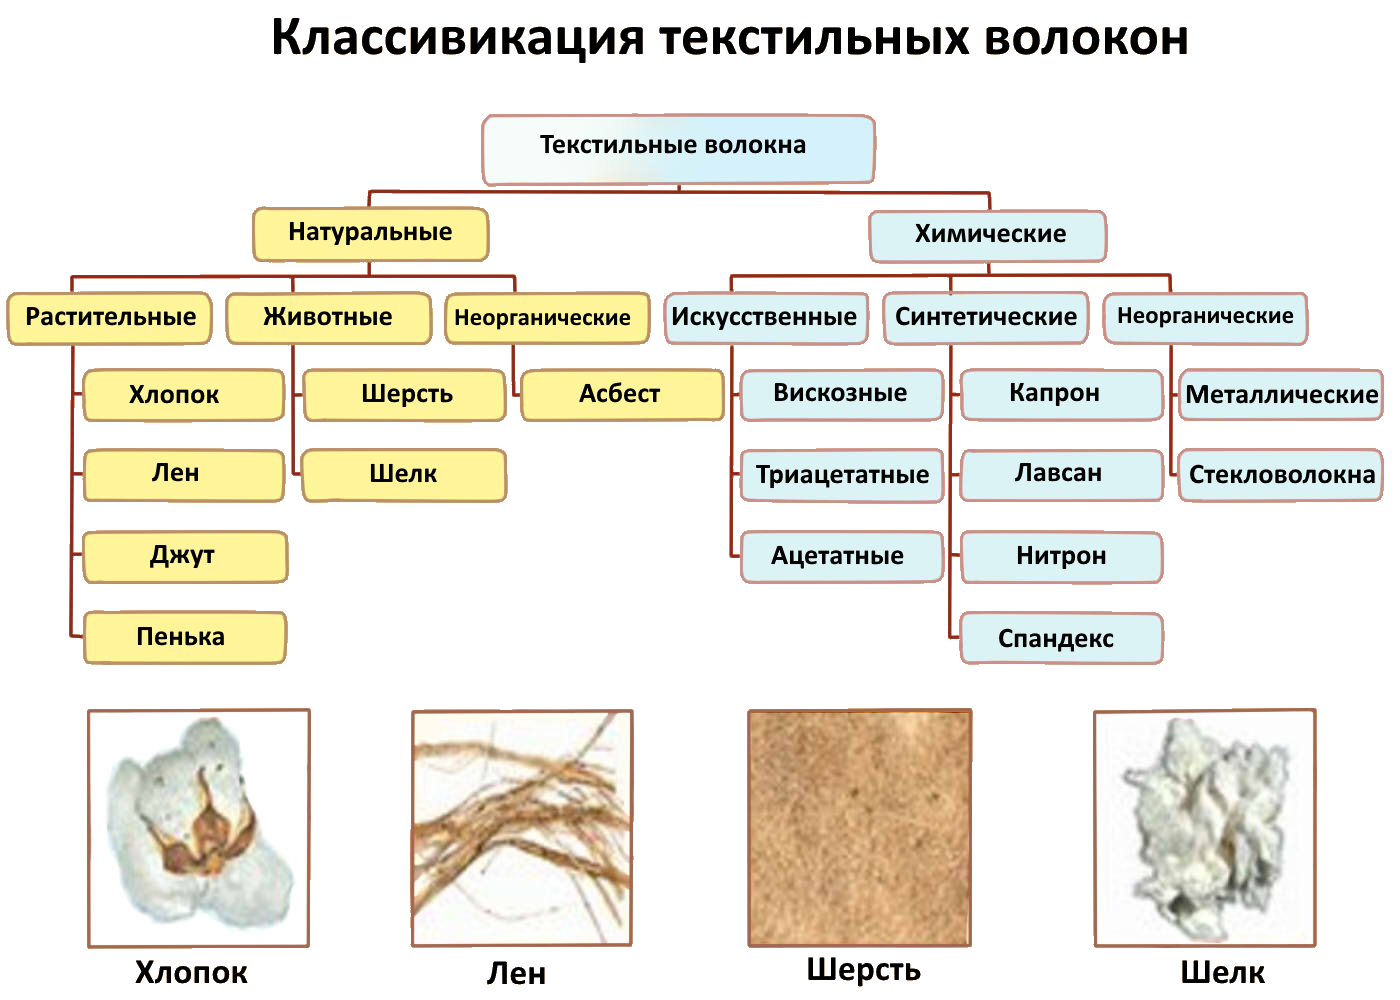 Искусственные и синтетические волокна, их классификация и описание